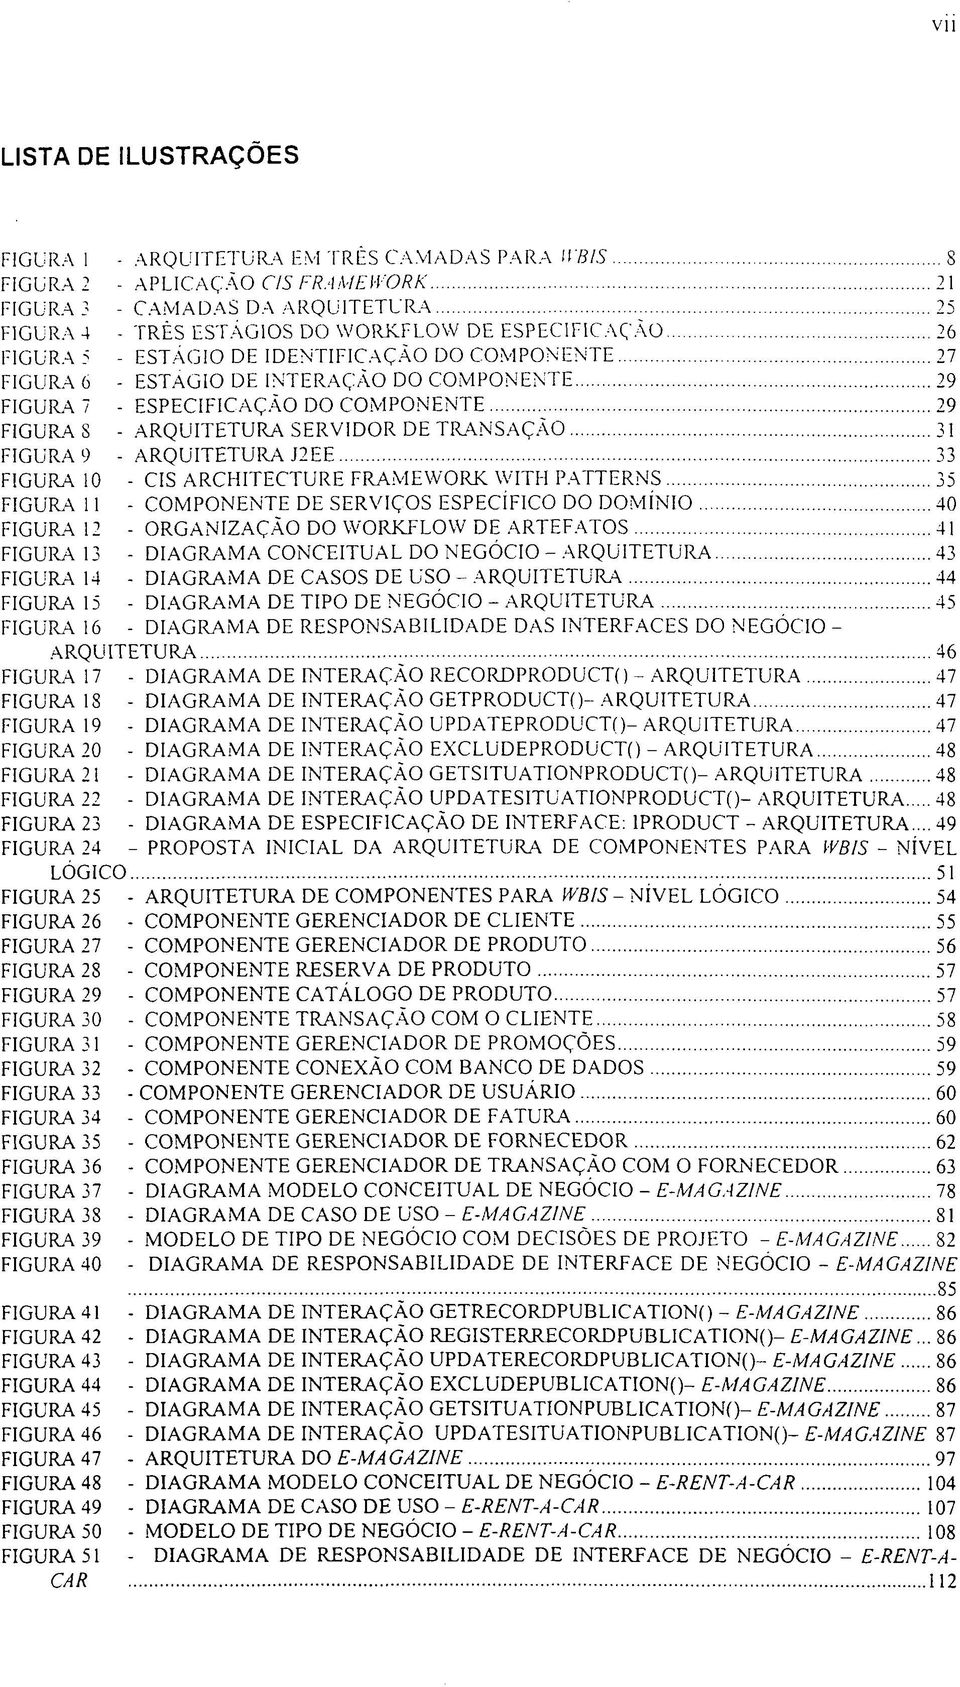 TRANSAÇÃO 31 FIGURA 9 - ARQUITETURA J2EE 33 FIGURA 10 - CIS ARCHITECTURE FRAMEWORK WITH PATTERNS 35 FIGURA 11 - COMPONENTE DE SERVIÇOS ESPECÍFICO DO DOMÍNIO 40 FIGURA 12 - ORGANIZAÇÃO DO WORKFLOW DE